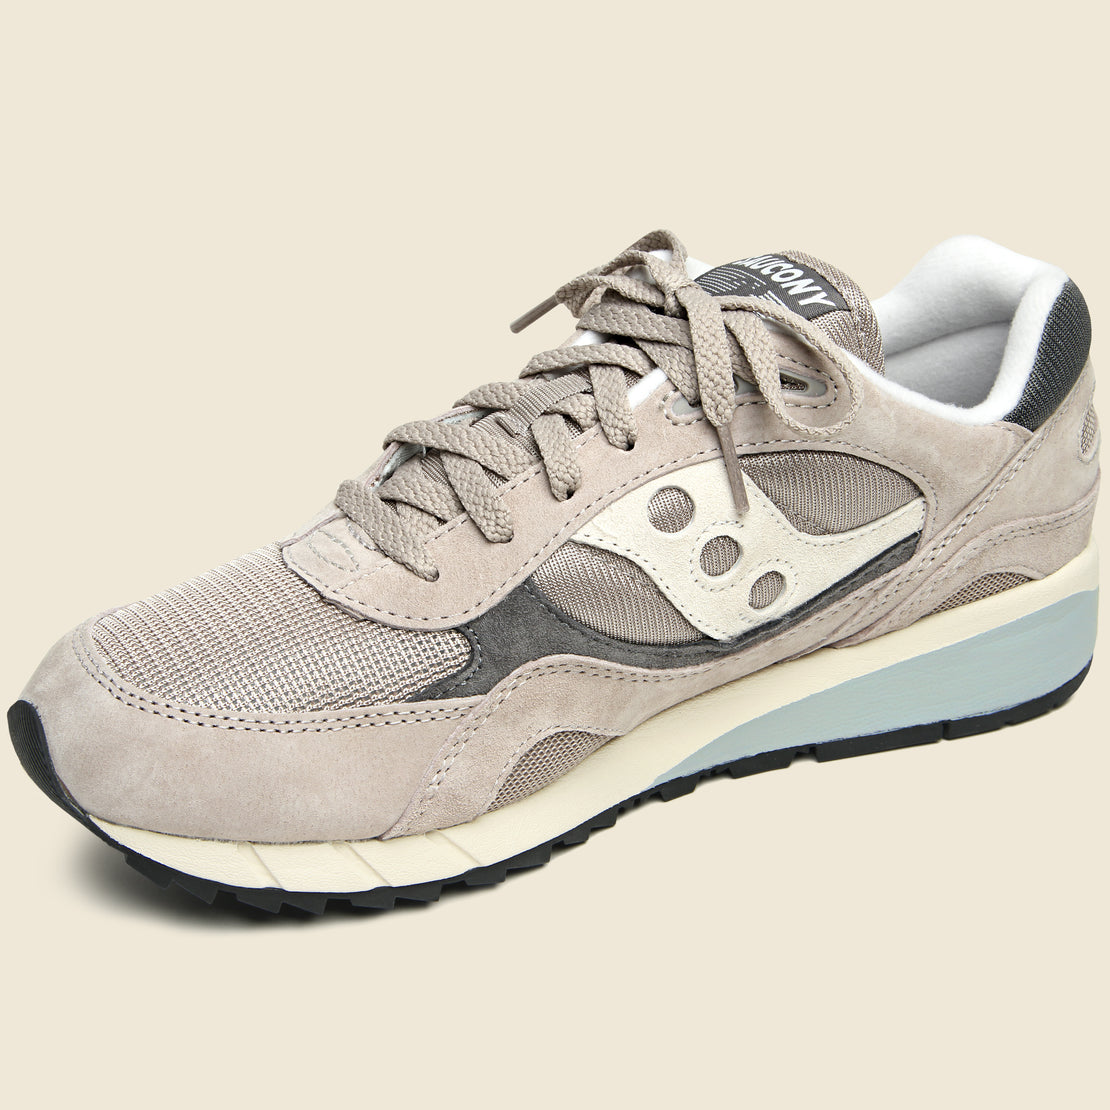 Shadow 6000 Sneaker - Grey/Grey